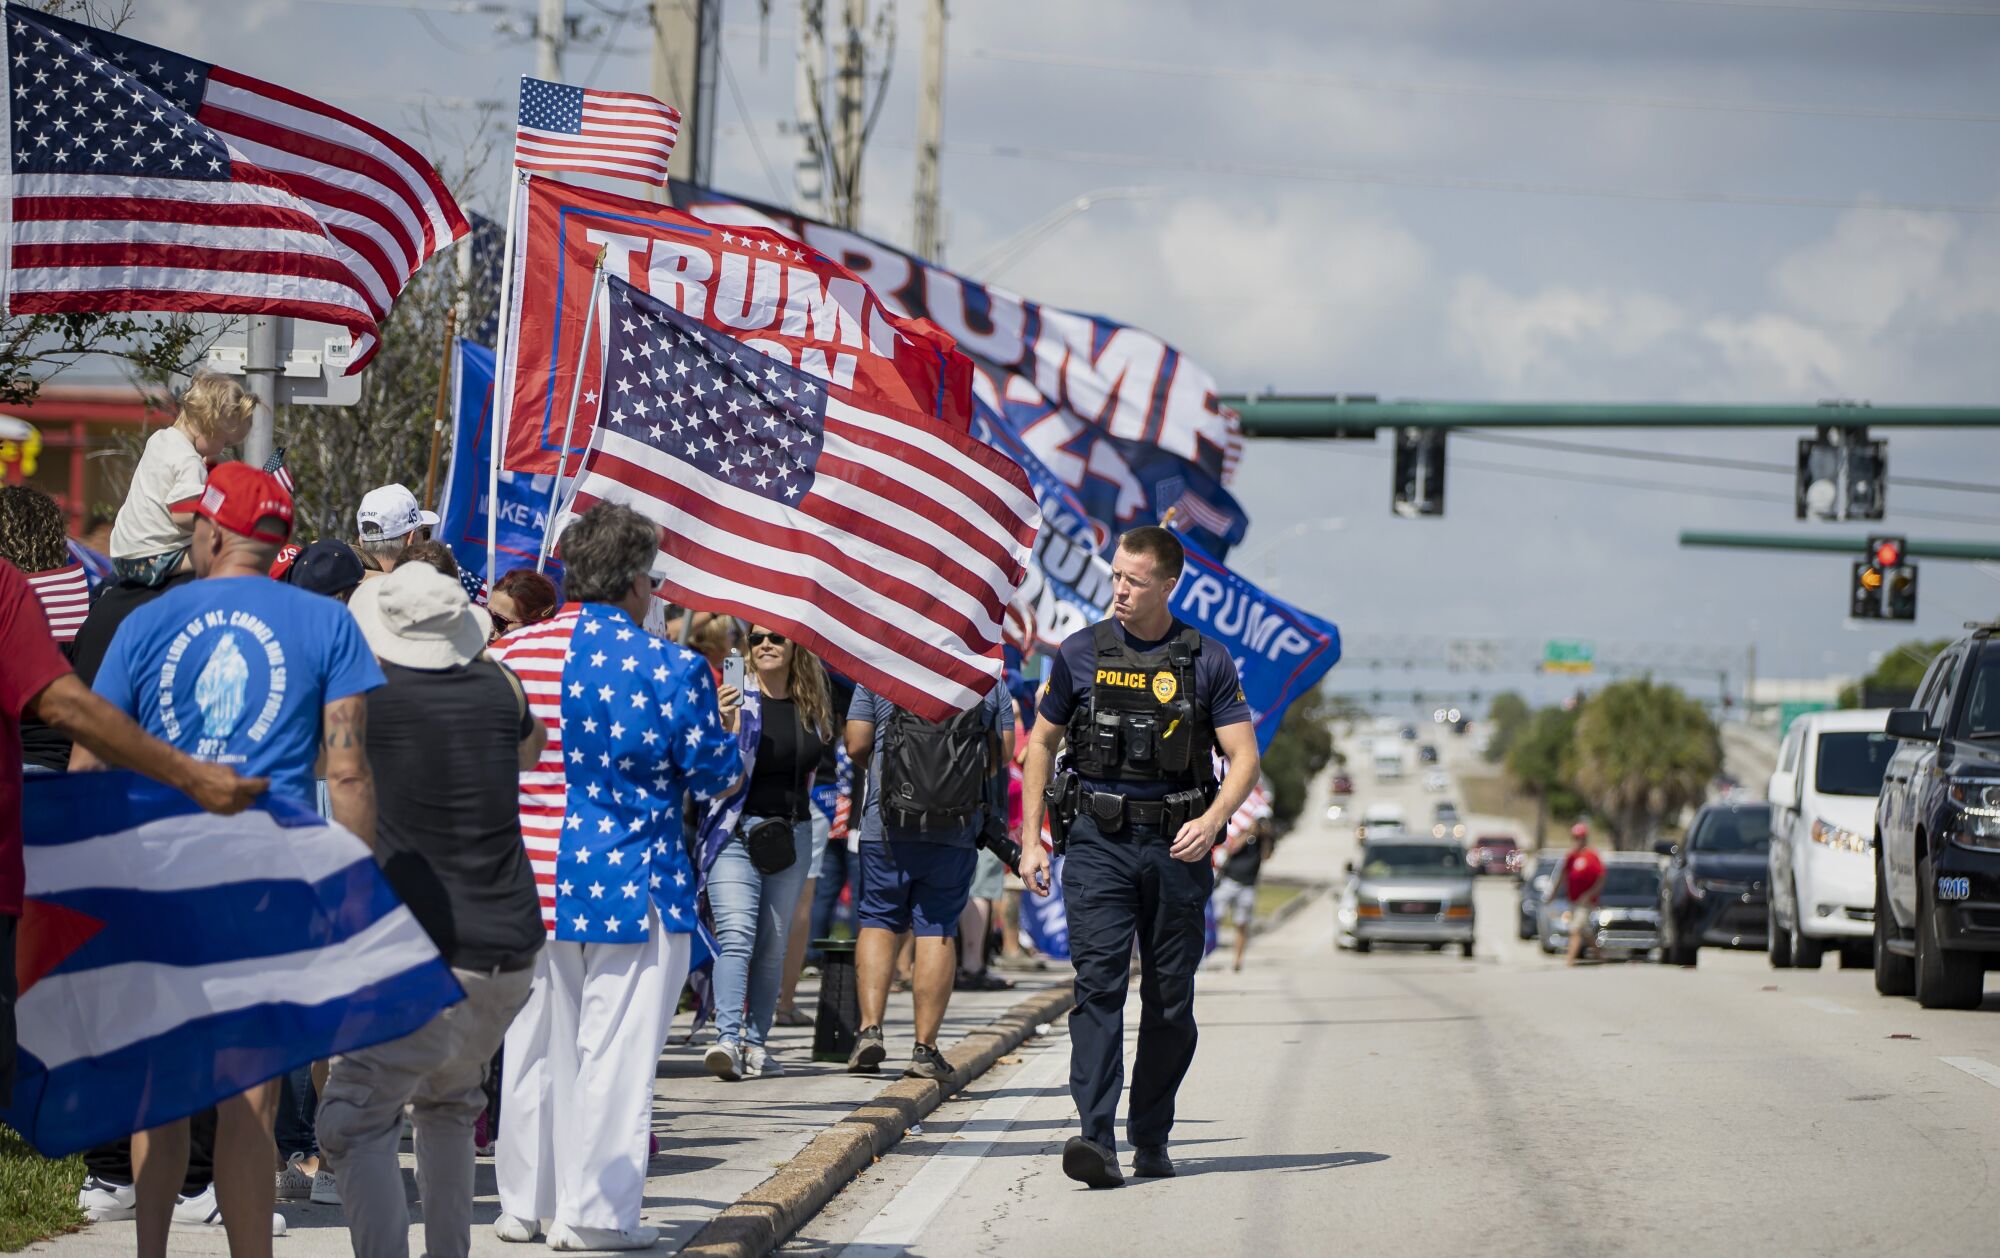 Bir polis memuru, ABD bayrakları ve Trump bayrakları taşıyan bir yol kenarında duran bir sıra insan boyunca yürüyor.